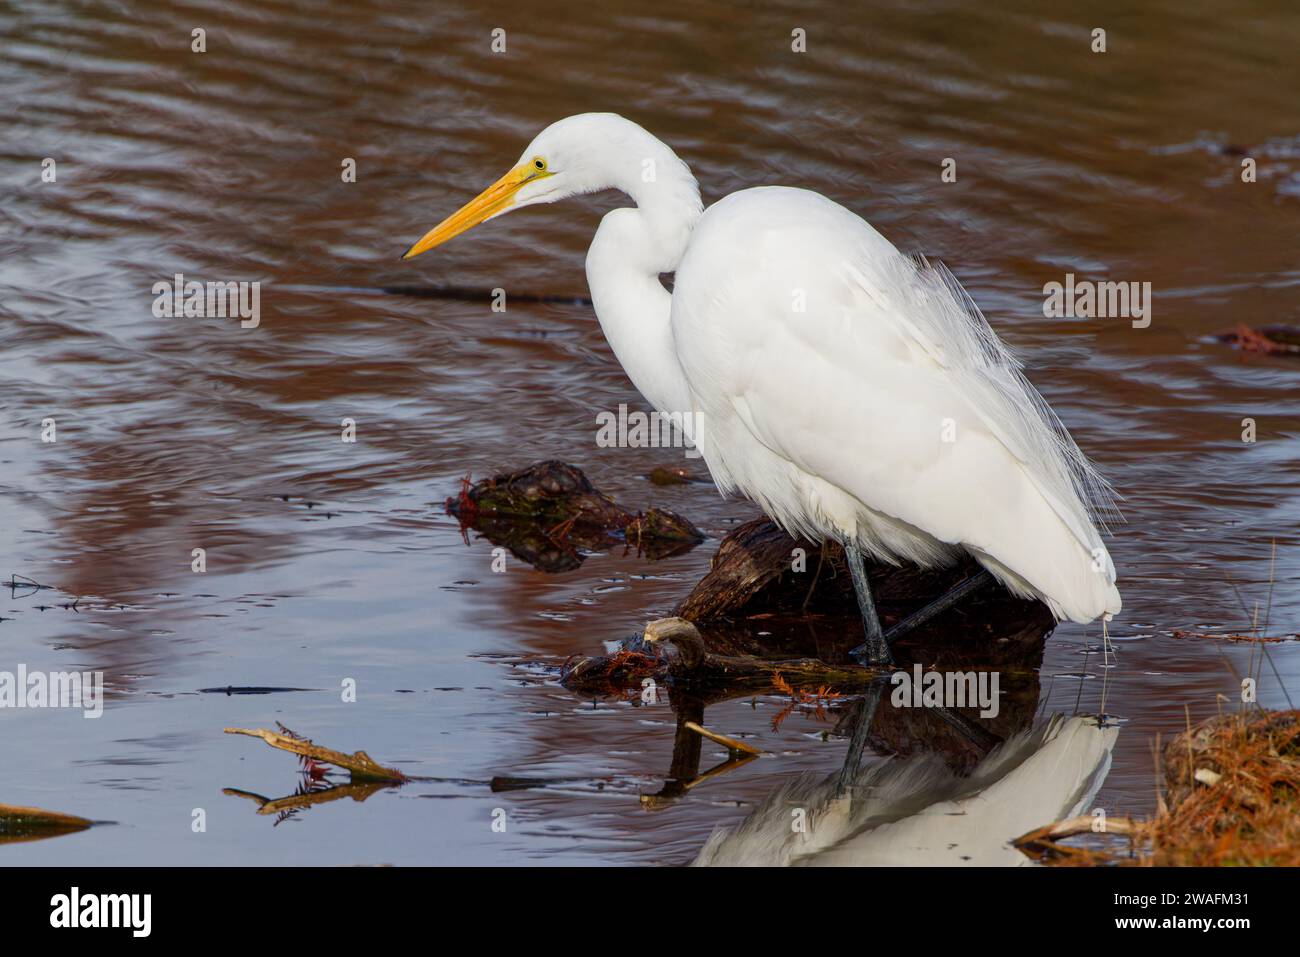 Ein großer Egret, der an einem Wintermorgen am Ufer des Wassers angeln kann. Es sind große, langbeinige Watvögel mit langen, S-geschwungenen Hälsen und dolchähnlichen Schellen. Stockfoto